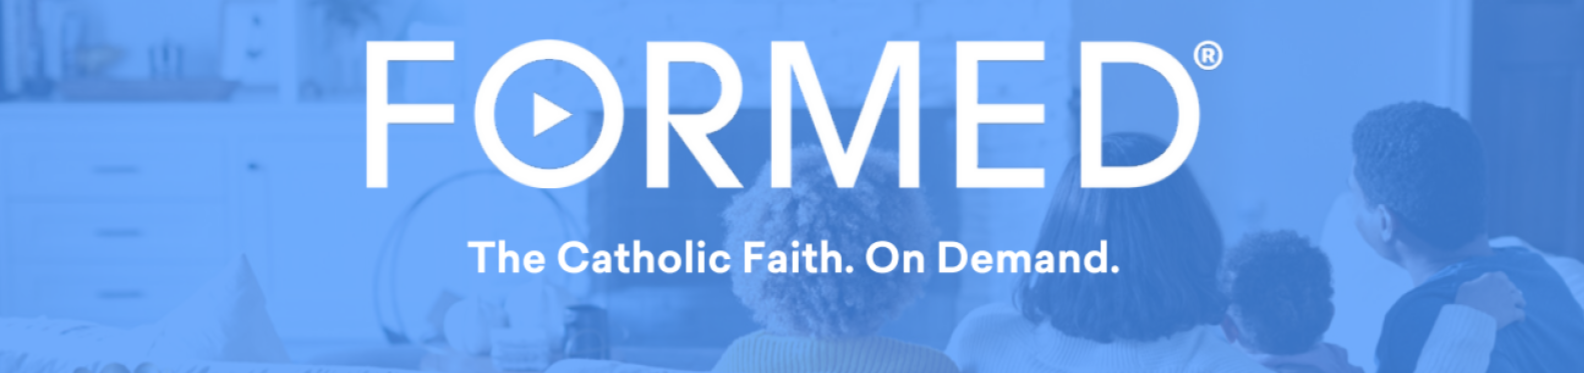 Formed.org Catholic faith on demand